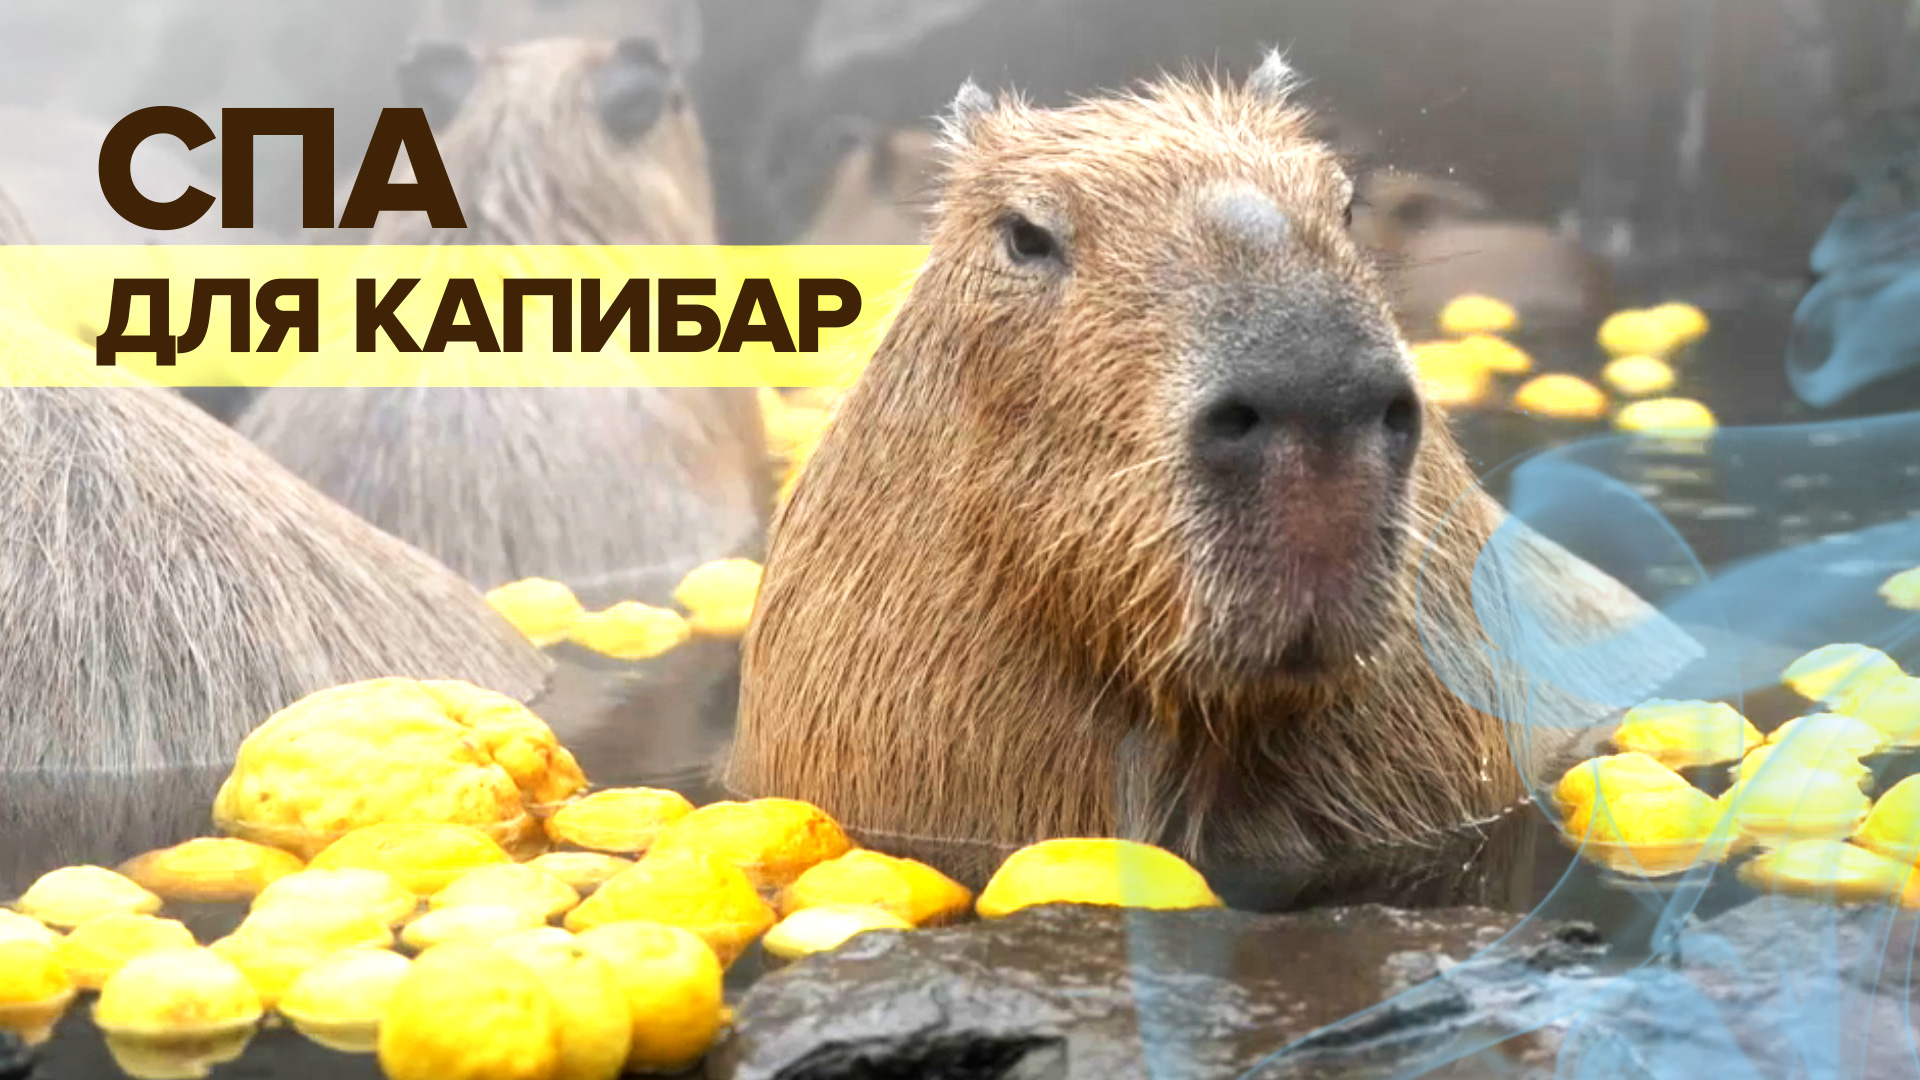 Жизнь прекрасна: в Японии капибарам устроили цитрусовую ванну